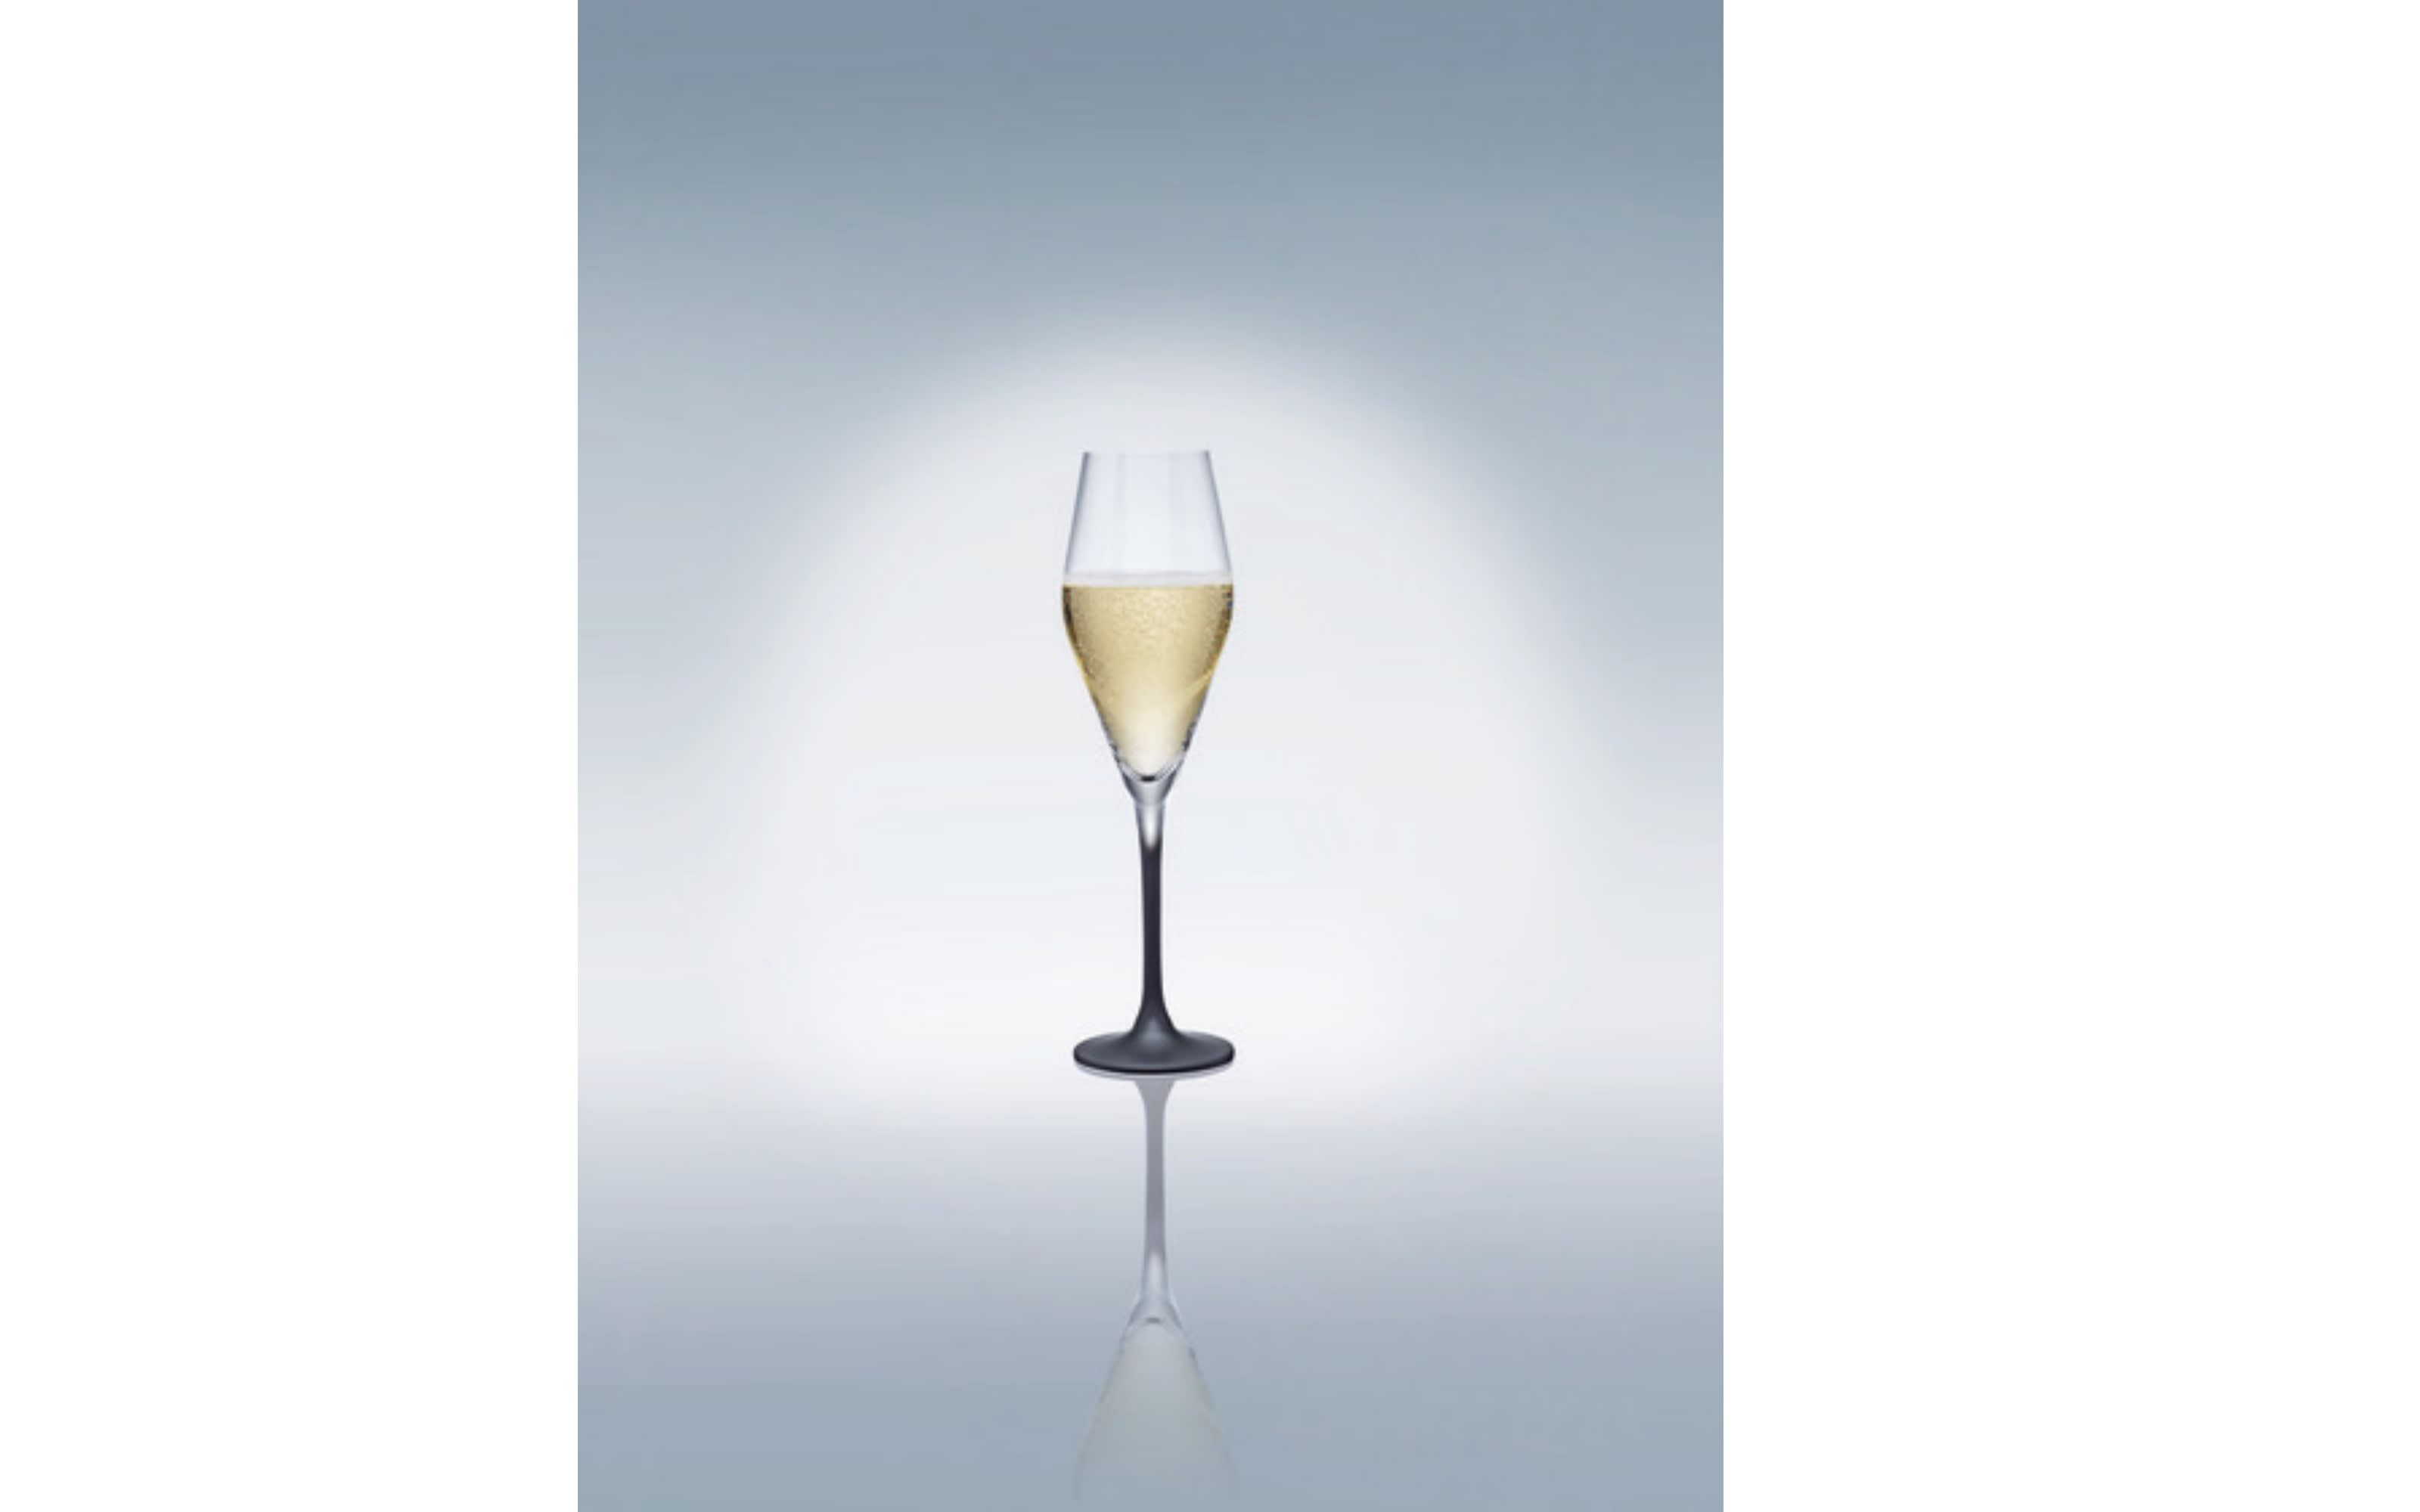 Champagnerkelch-Set Manufacture Rock aus Kristallglas, 4-teilig